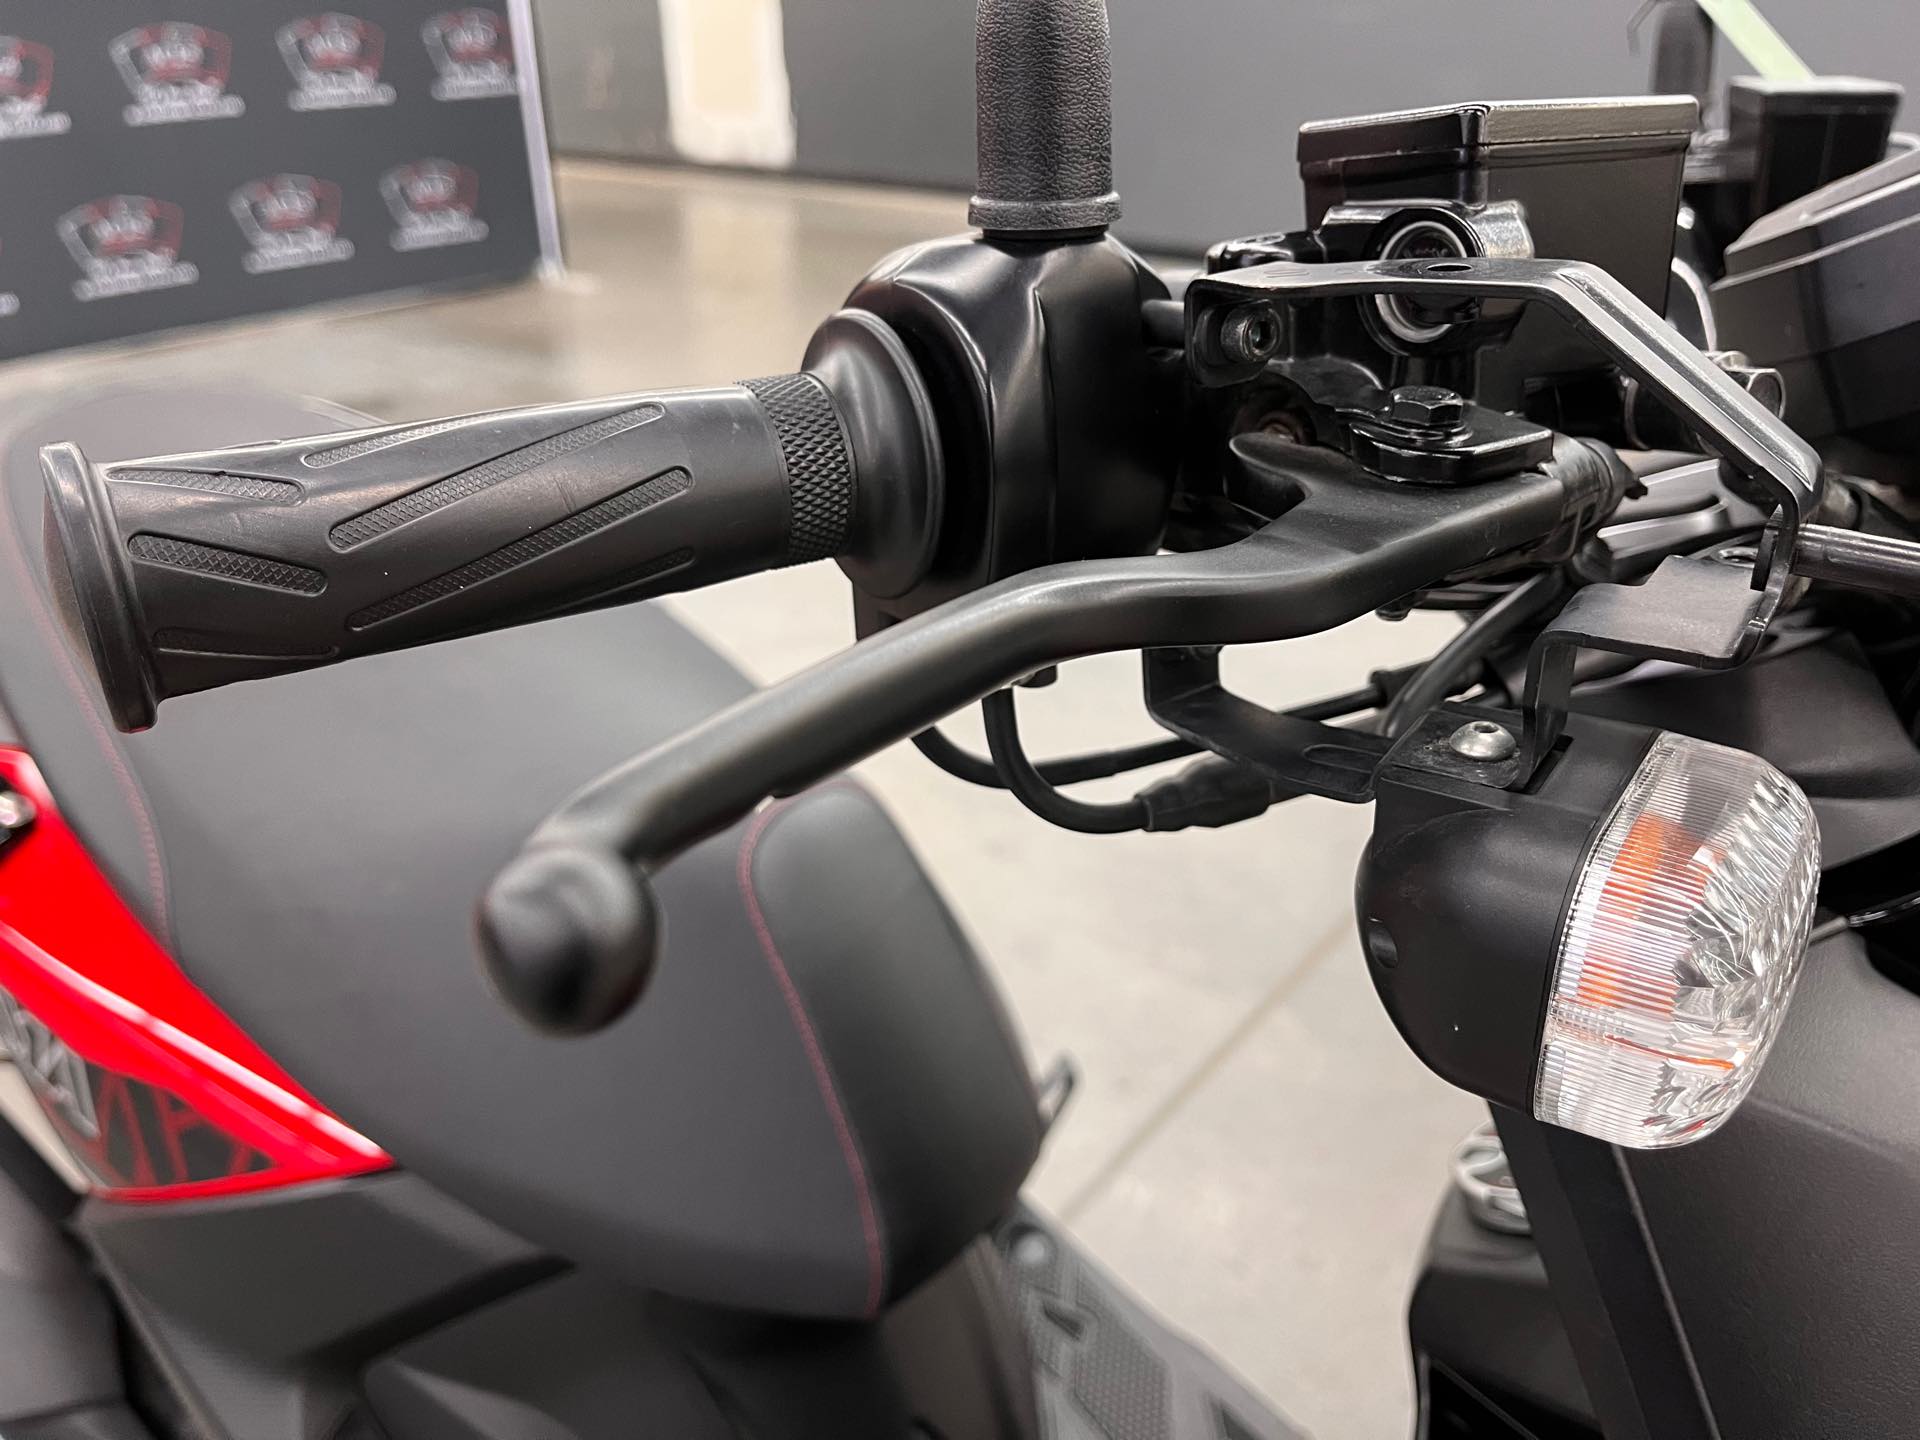 2018 Yamaha Zuma 125 at Aces Motorcycles - Denver